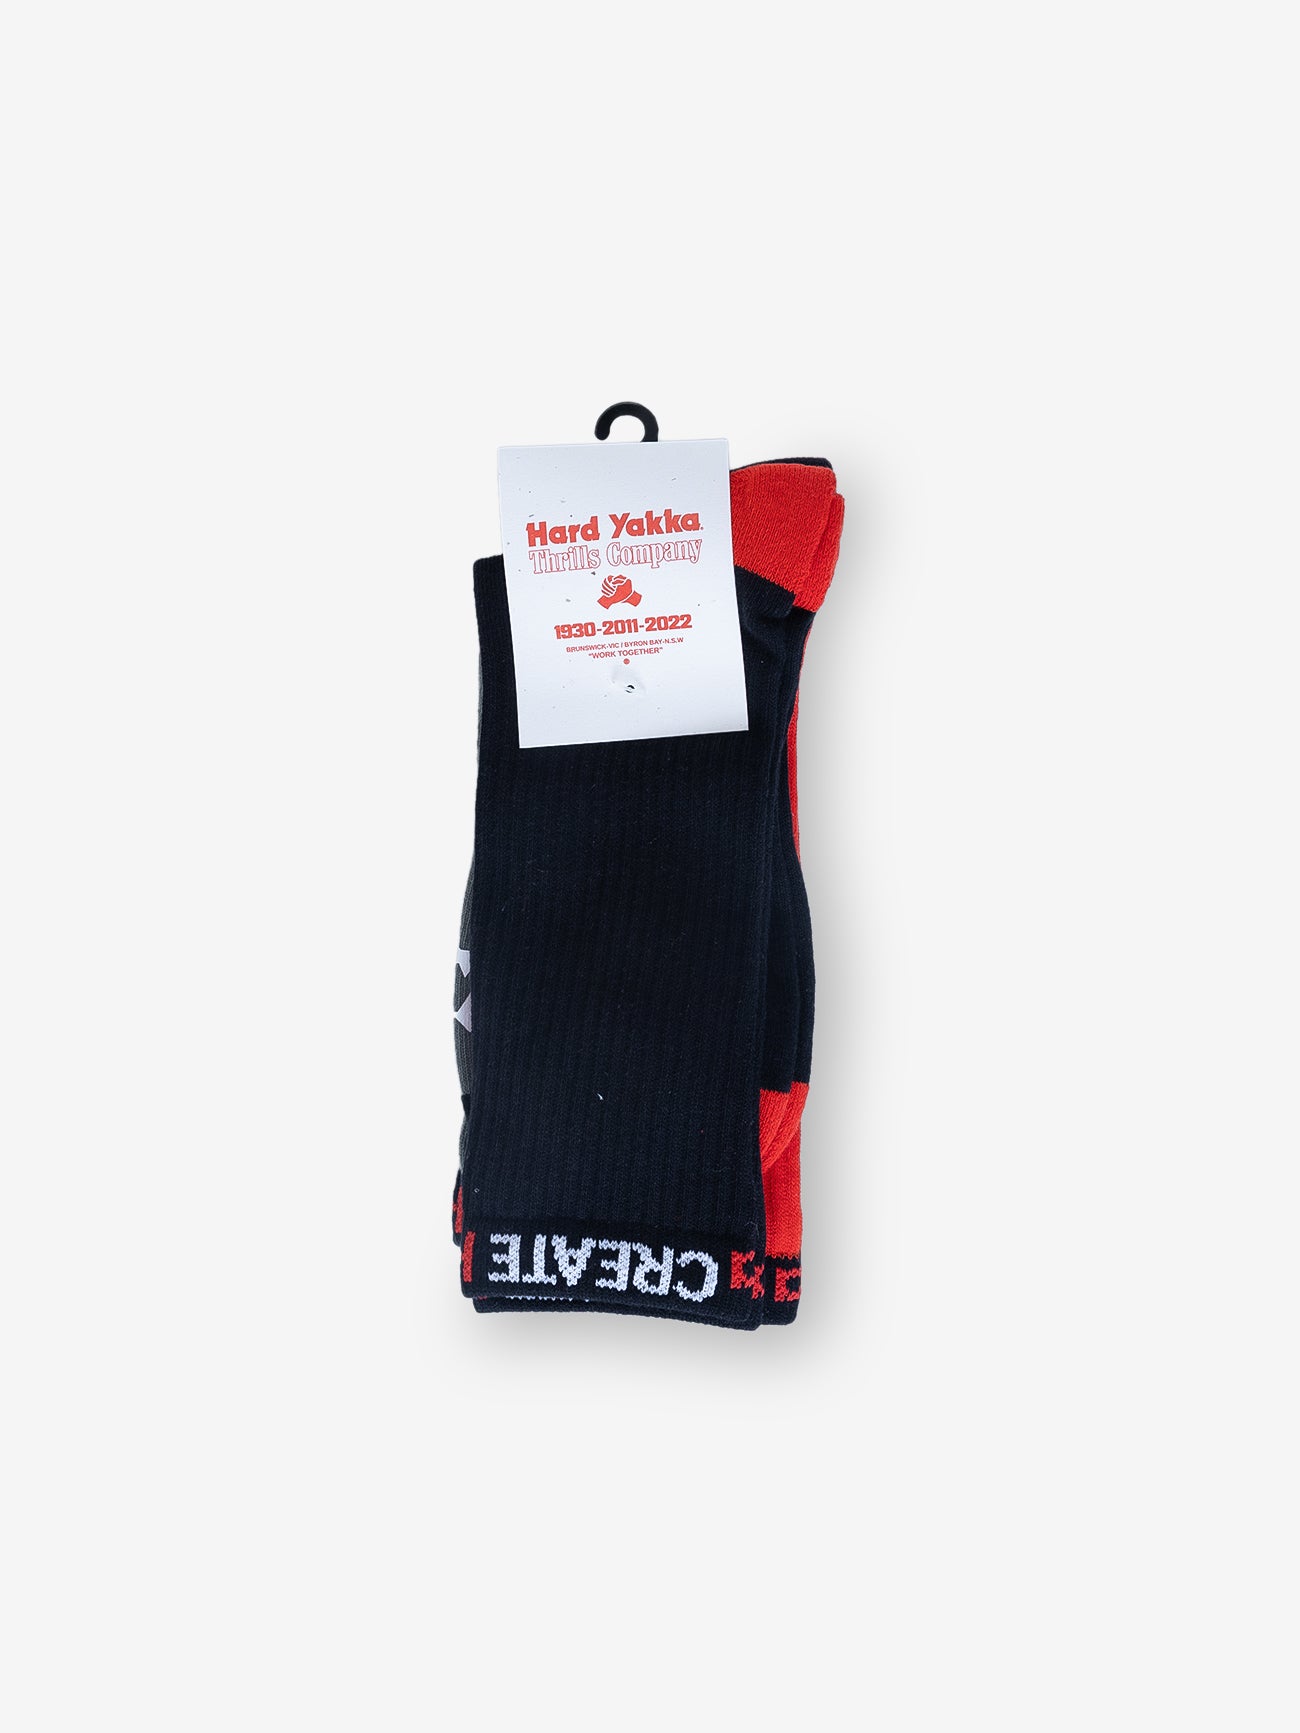 Hard Yakka Create - 3 Pack Socks - Black/Red/Scrubs Green